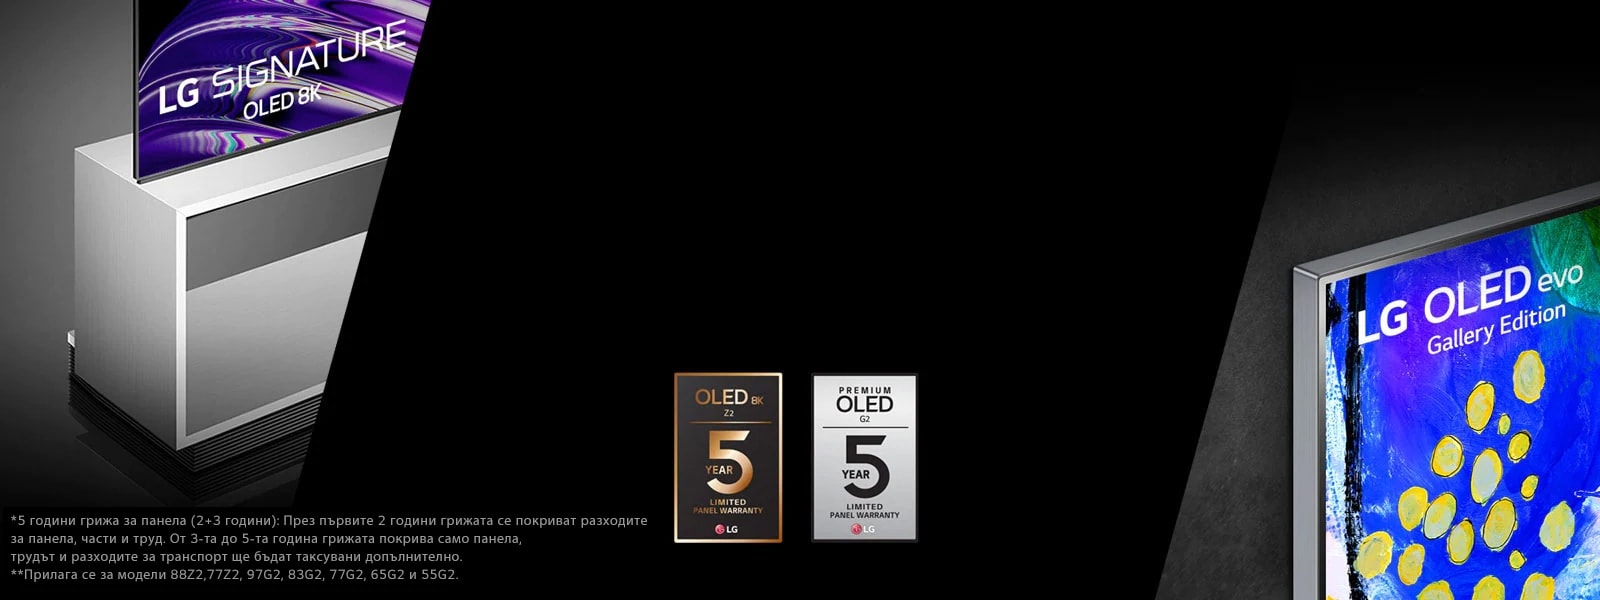 На изображението в ляво можете да видите страничен изглед на LG OLED Z2 със стойка за под. В дясно се насладете на Gallery Design на LG OLED G2. В средата на изображението виждате логата на 5-годишната гаранция